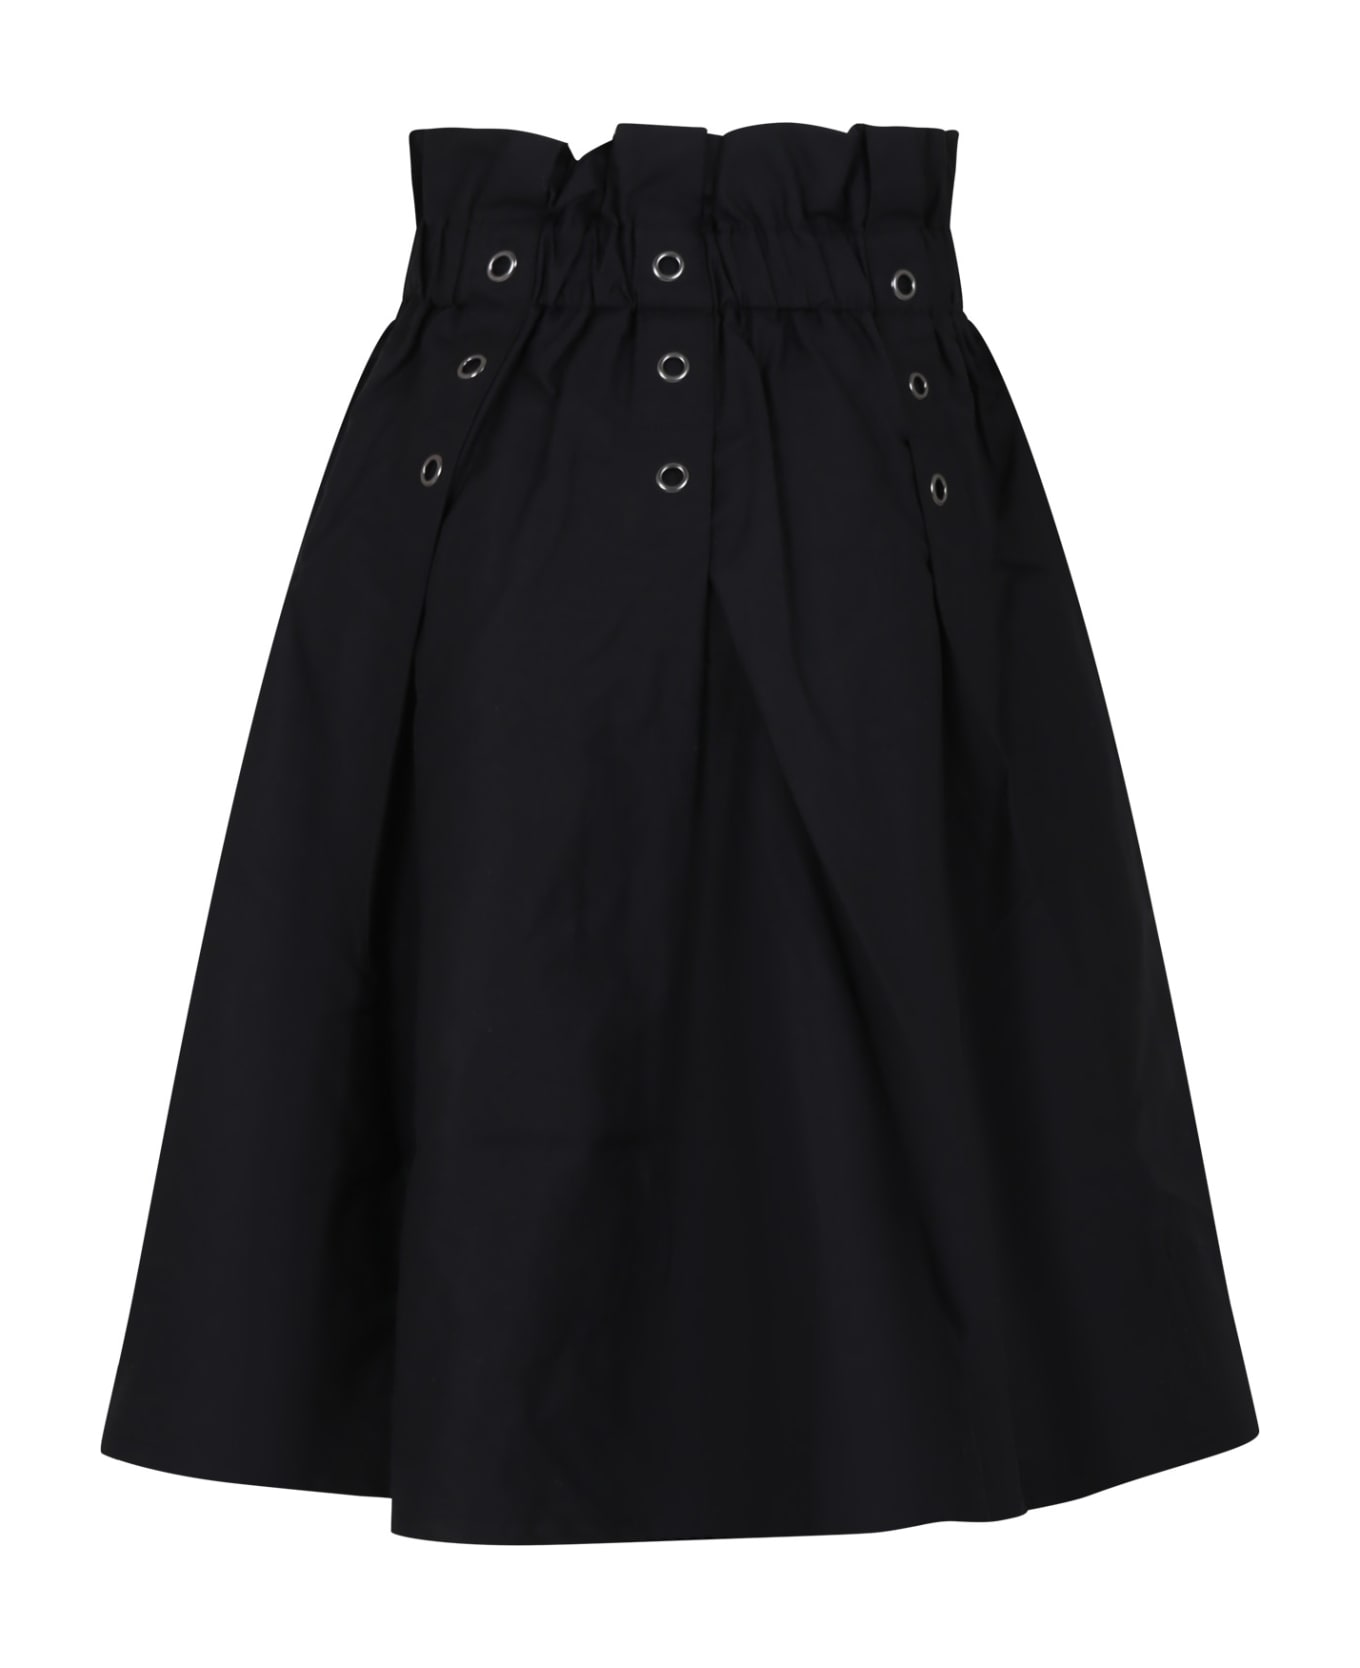 DKNY Black Casual Skirt For Girl - Black